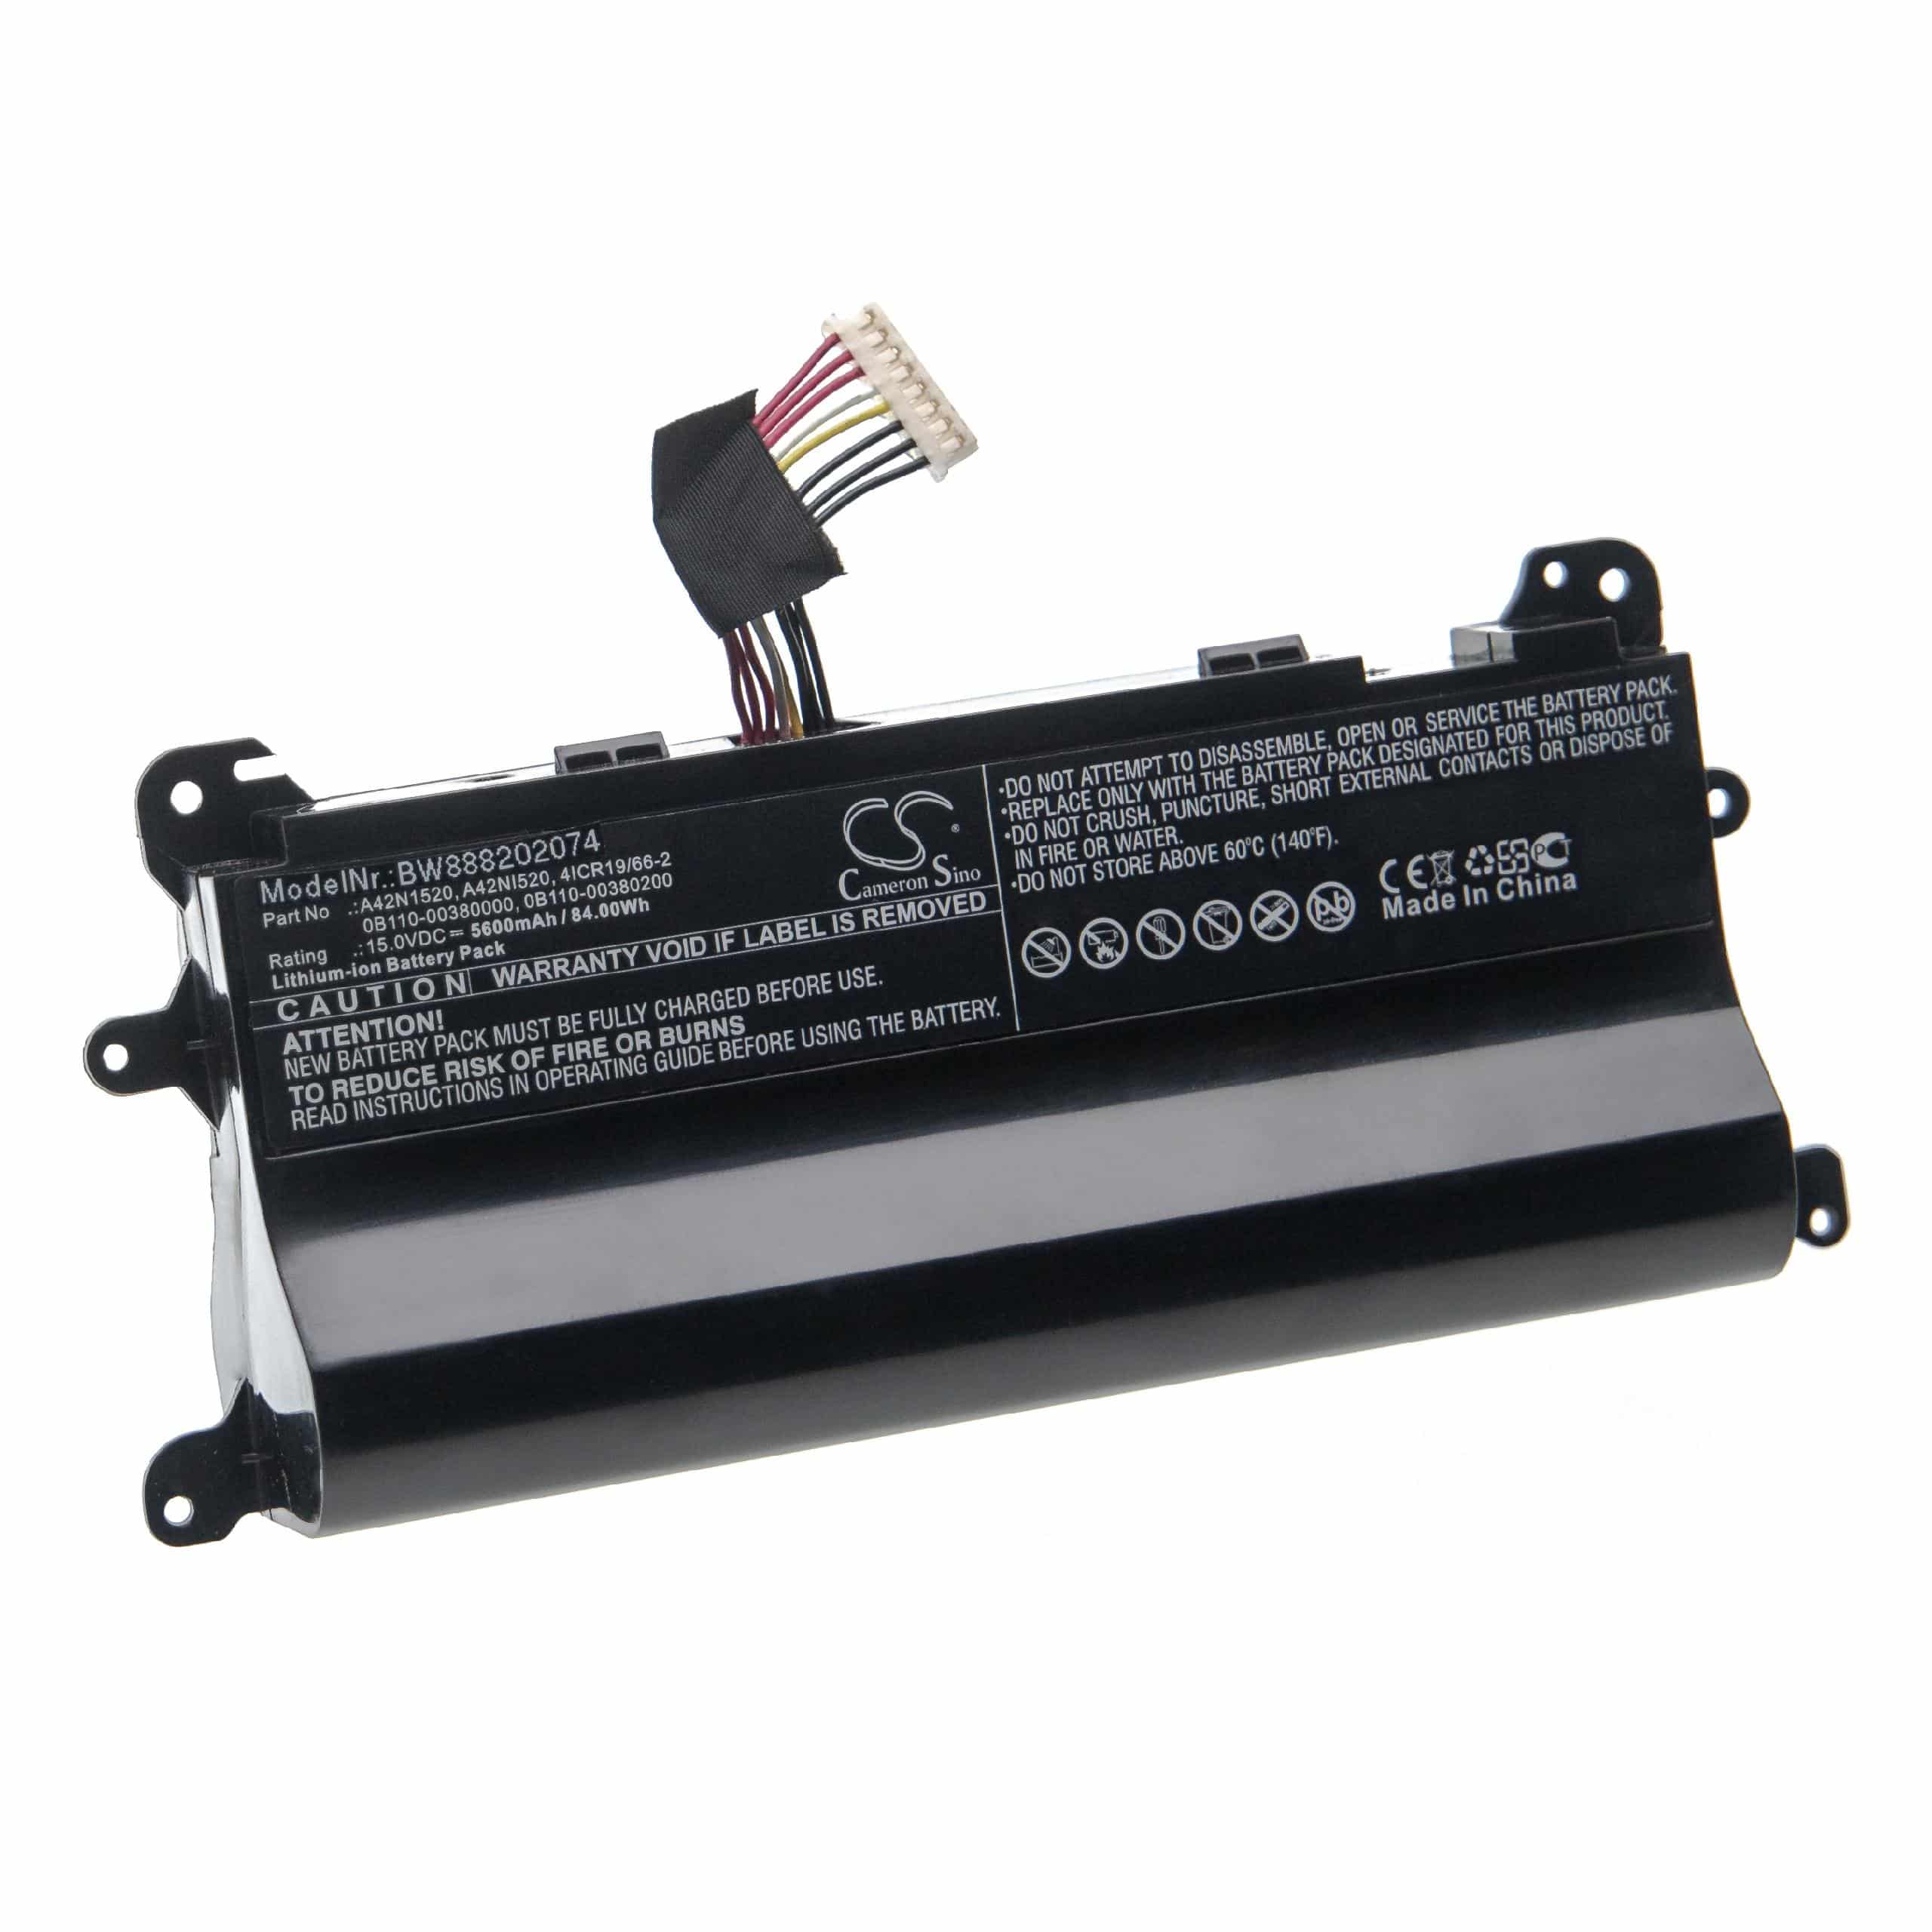 Batterie remplace Asus 0B110-00380200, 0B110-00380000 pour ordinateur portable - 5600mAh 15V Li-ion, noir